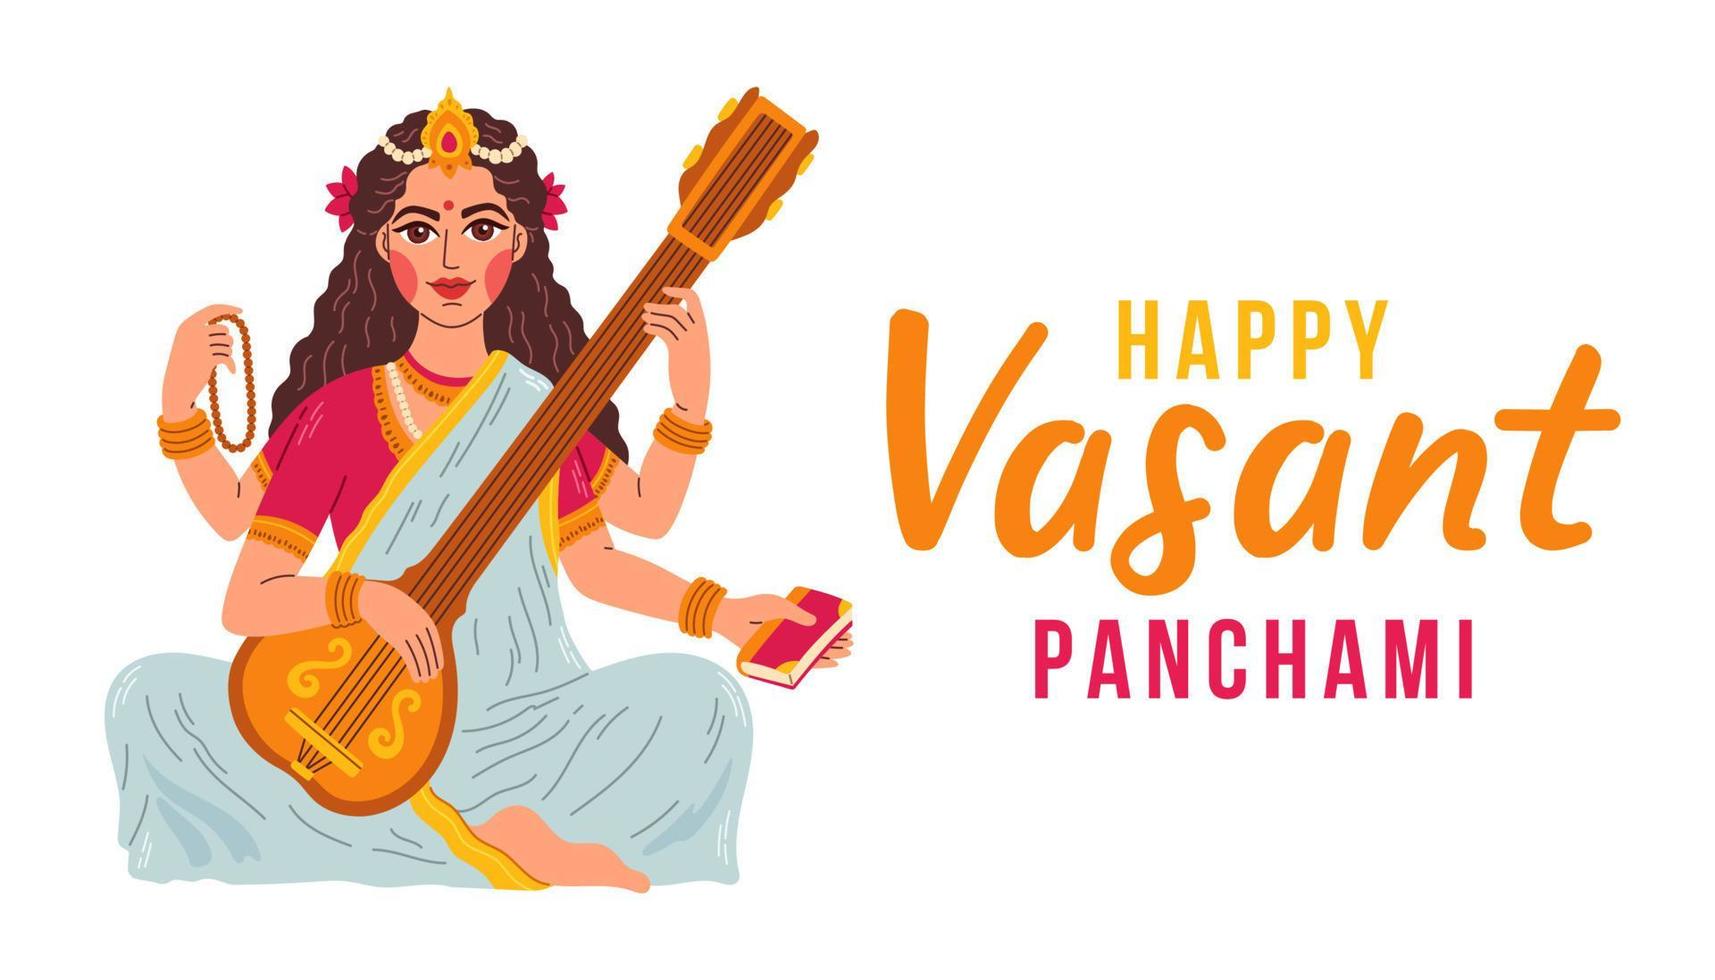 vasant panchami india festival, déesse de la sagesse maa saraswati, heureux vasant panchami illustration vectorielle vecteur